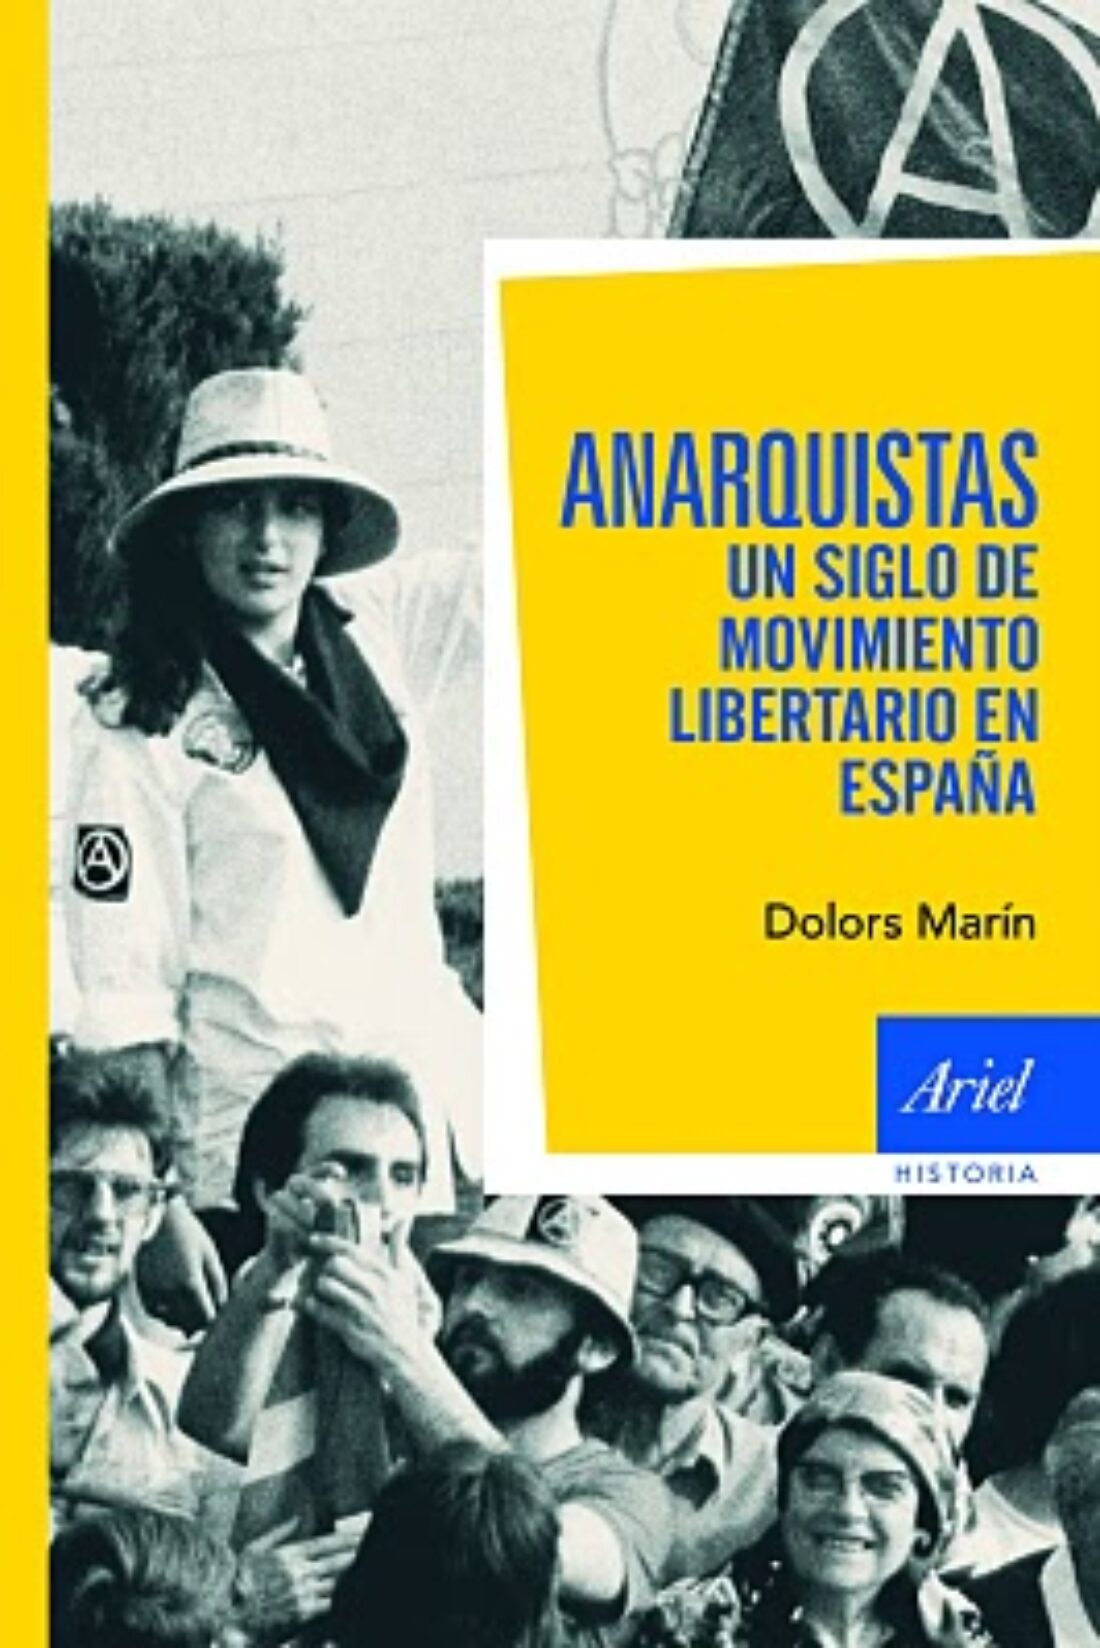 Madrid: Presentación del libro «Anarquistas. Un siglo de movimiento libertario en España»